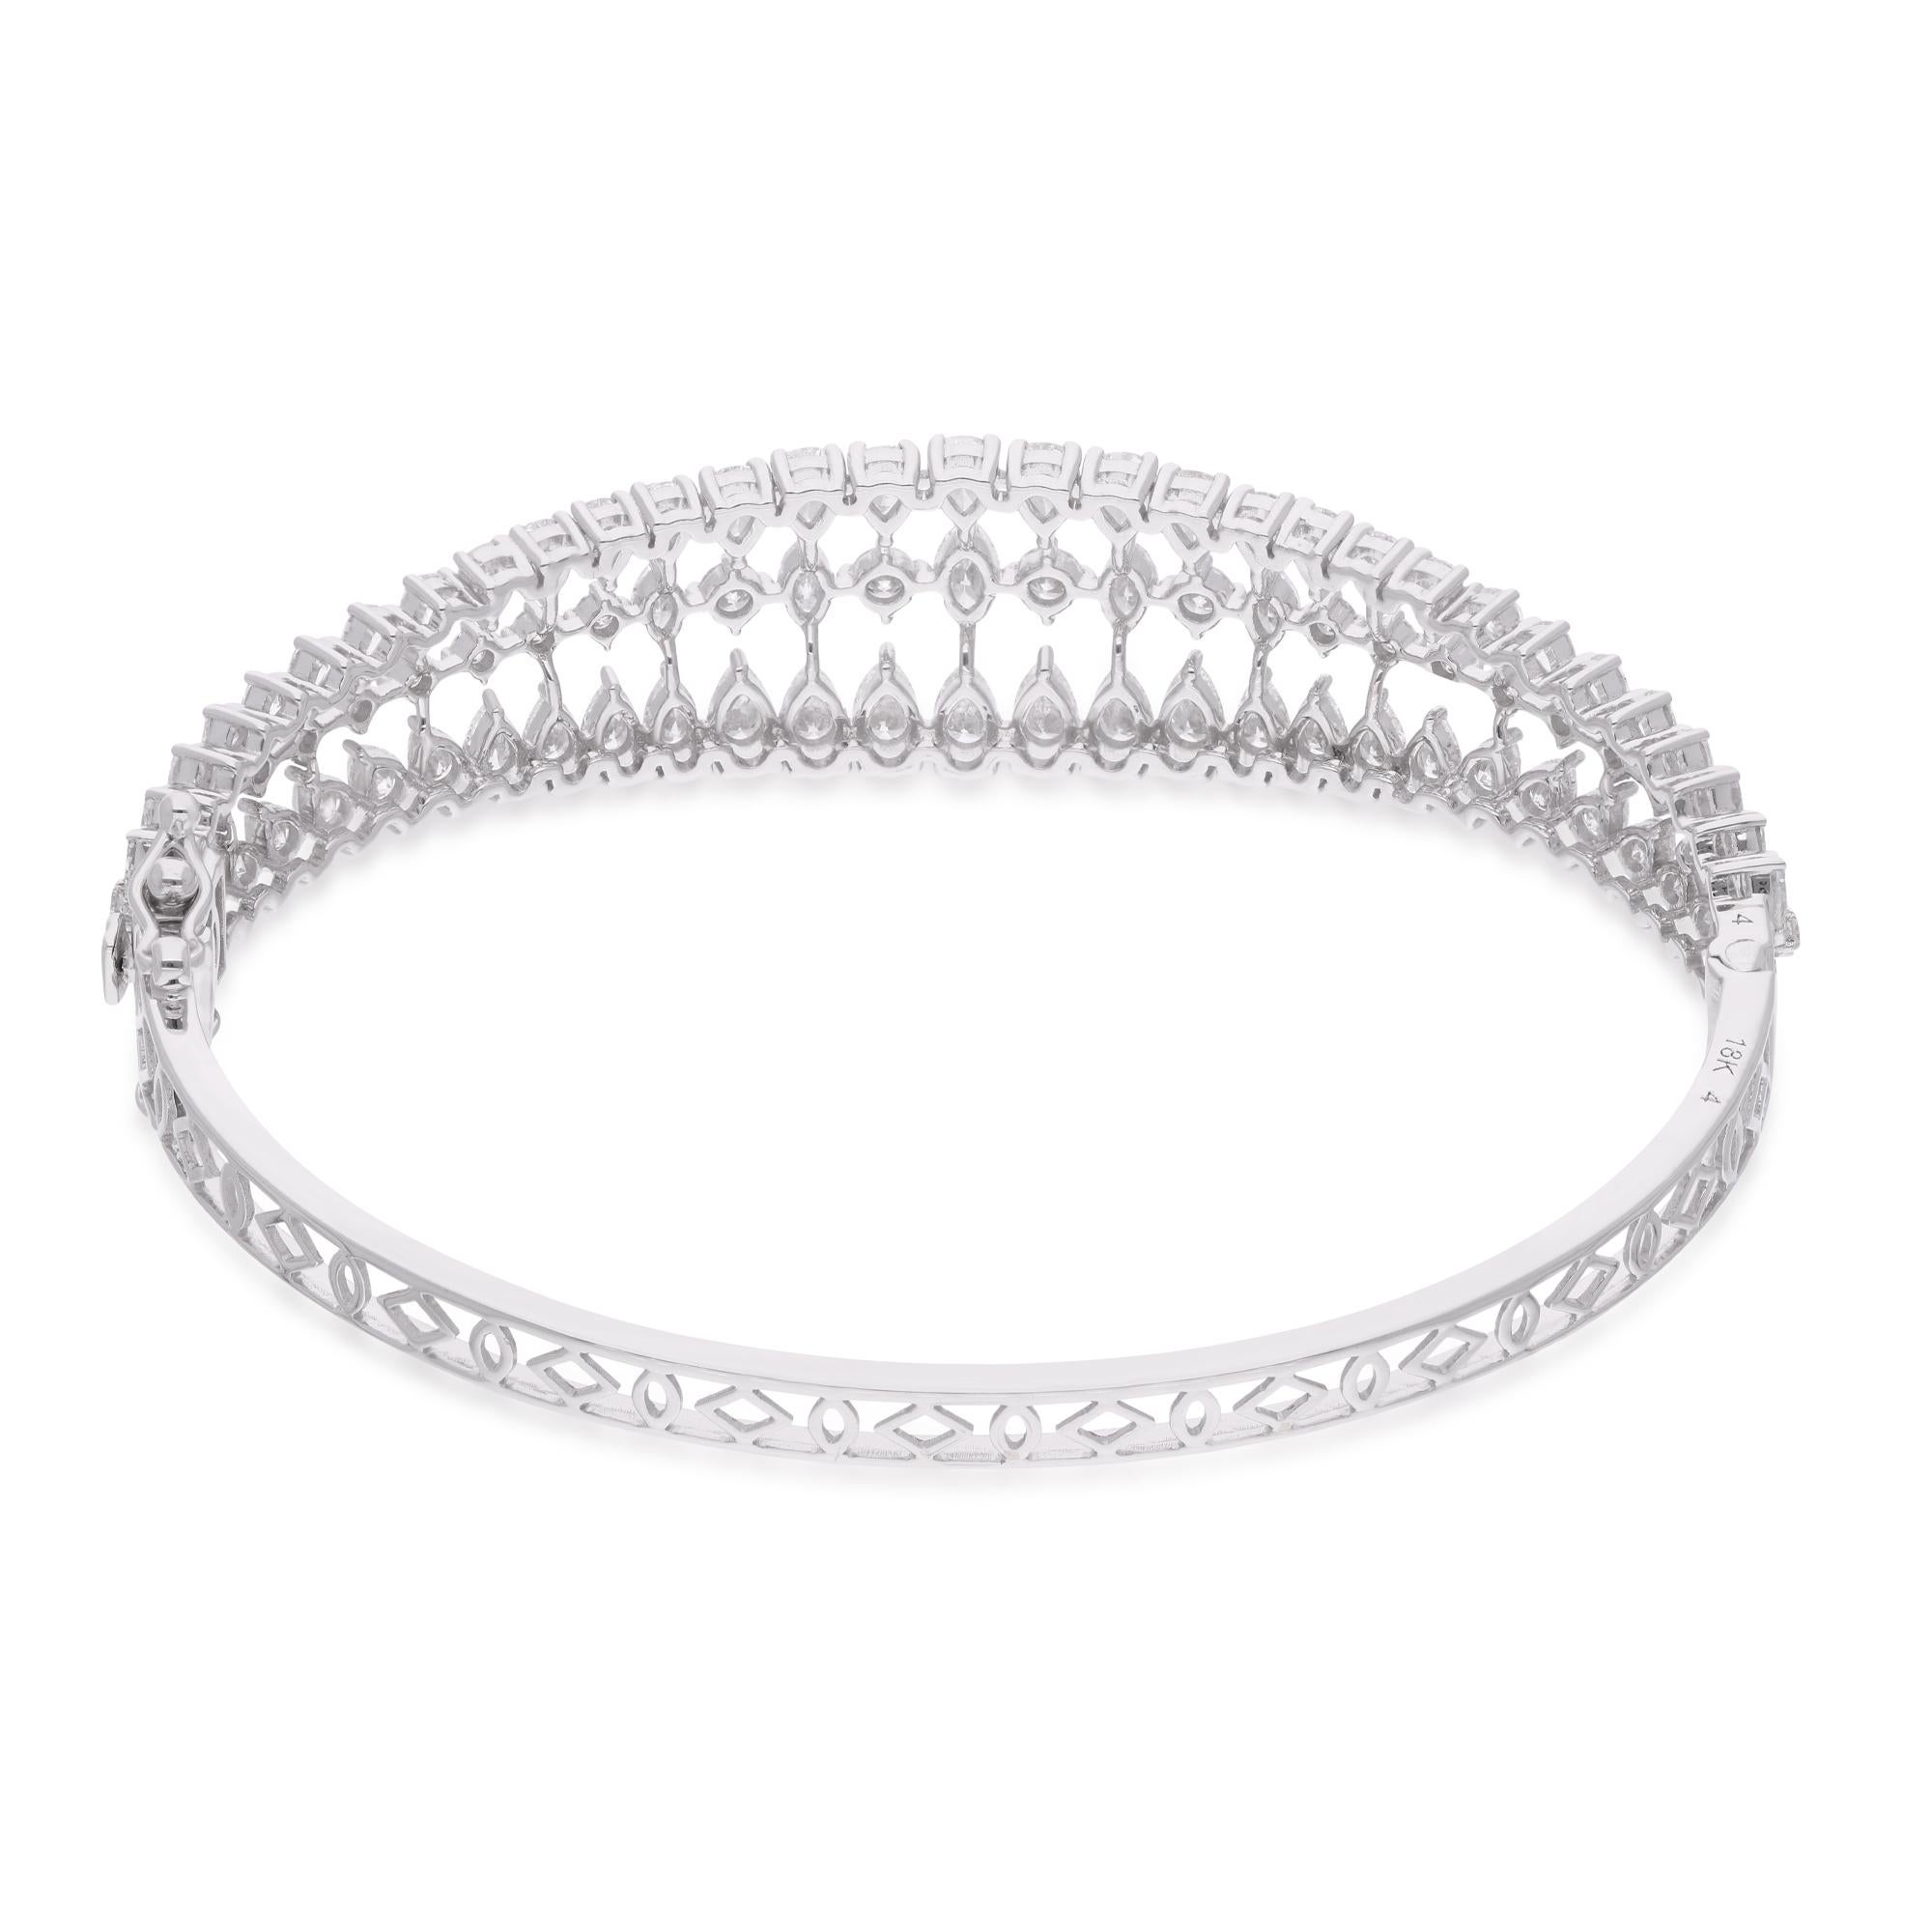 Entrez dans le royaume du luxe inégalé avec cet extraordinaire bracelet cage en diamant naturel de 5,33 carats, méticuleusement réalisé en or blanc lustré de 18 carats. Ce bracelet est un véritable témoignage de l'art de la joaillerie fine, exsudant